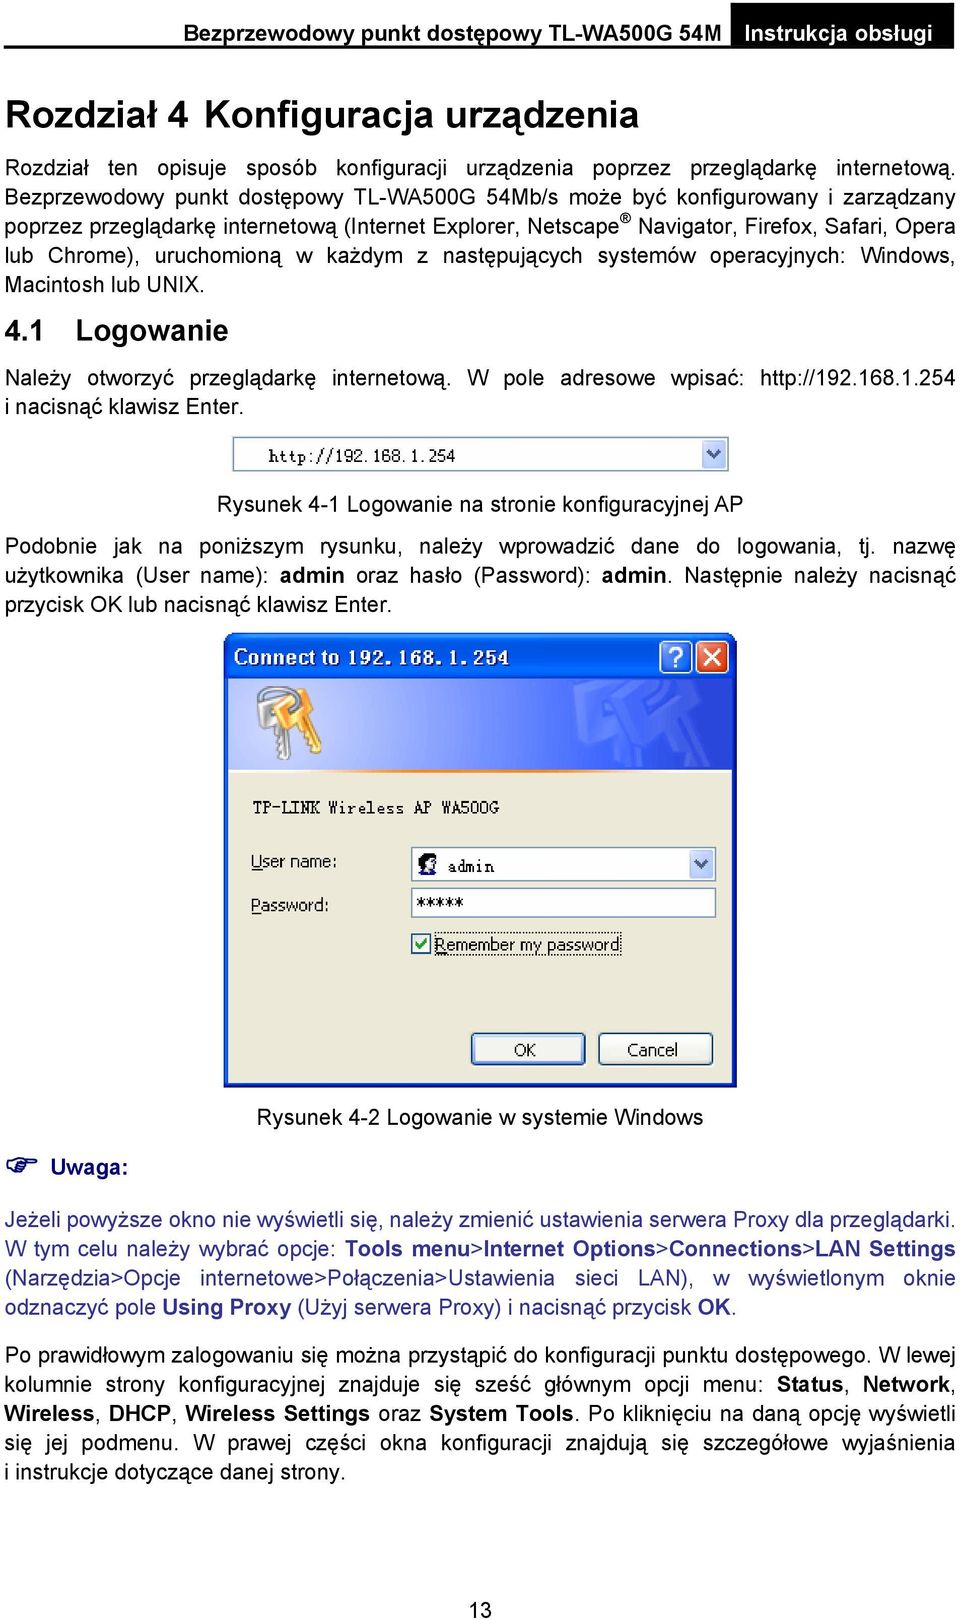 uruchomioną w każdym z następujących systemów operacyjnych: Windows, Macintosh lub UNIX. 4.1 Logowanie Należy otworzyć przeglądarkę internetową. W pole adresowe wpisać: http://192.168.1.254 i nacisnąć klawisz Enter.